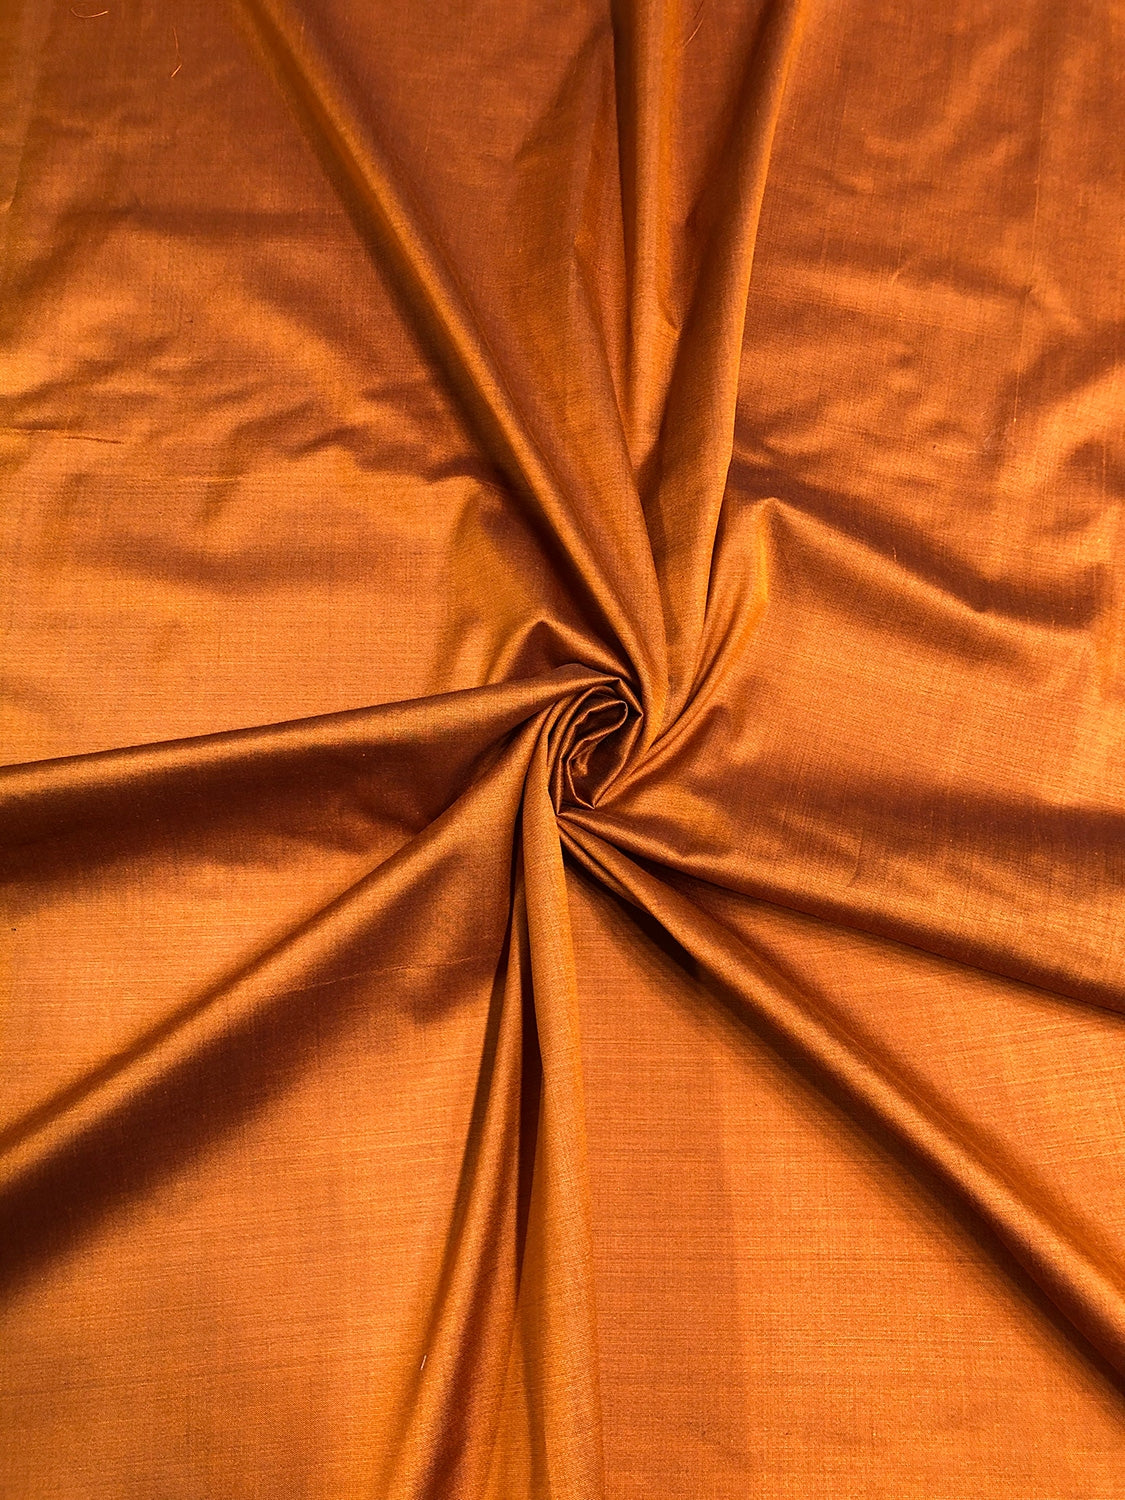 Pumpkin Spun Silk Fabric